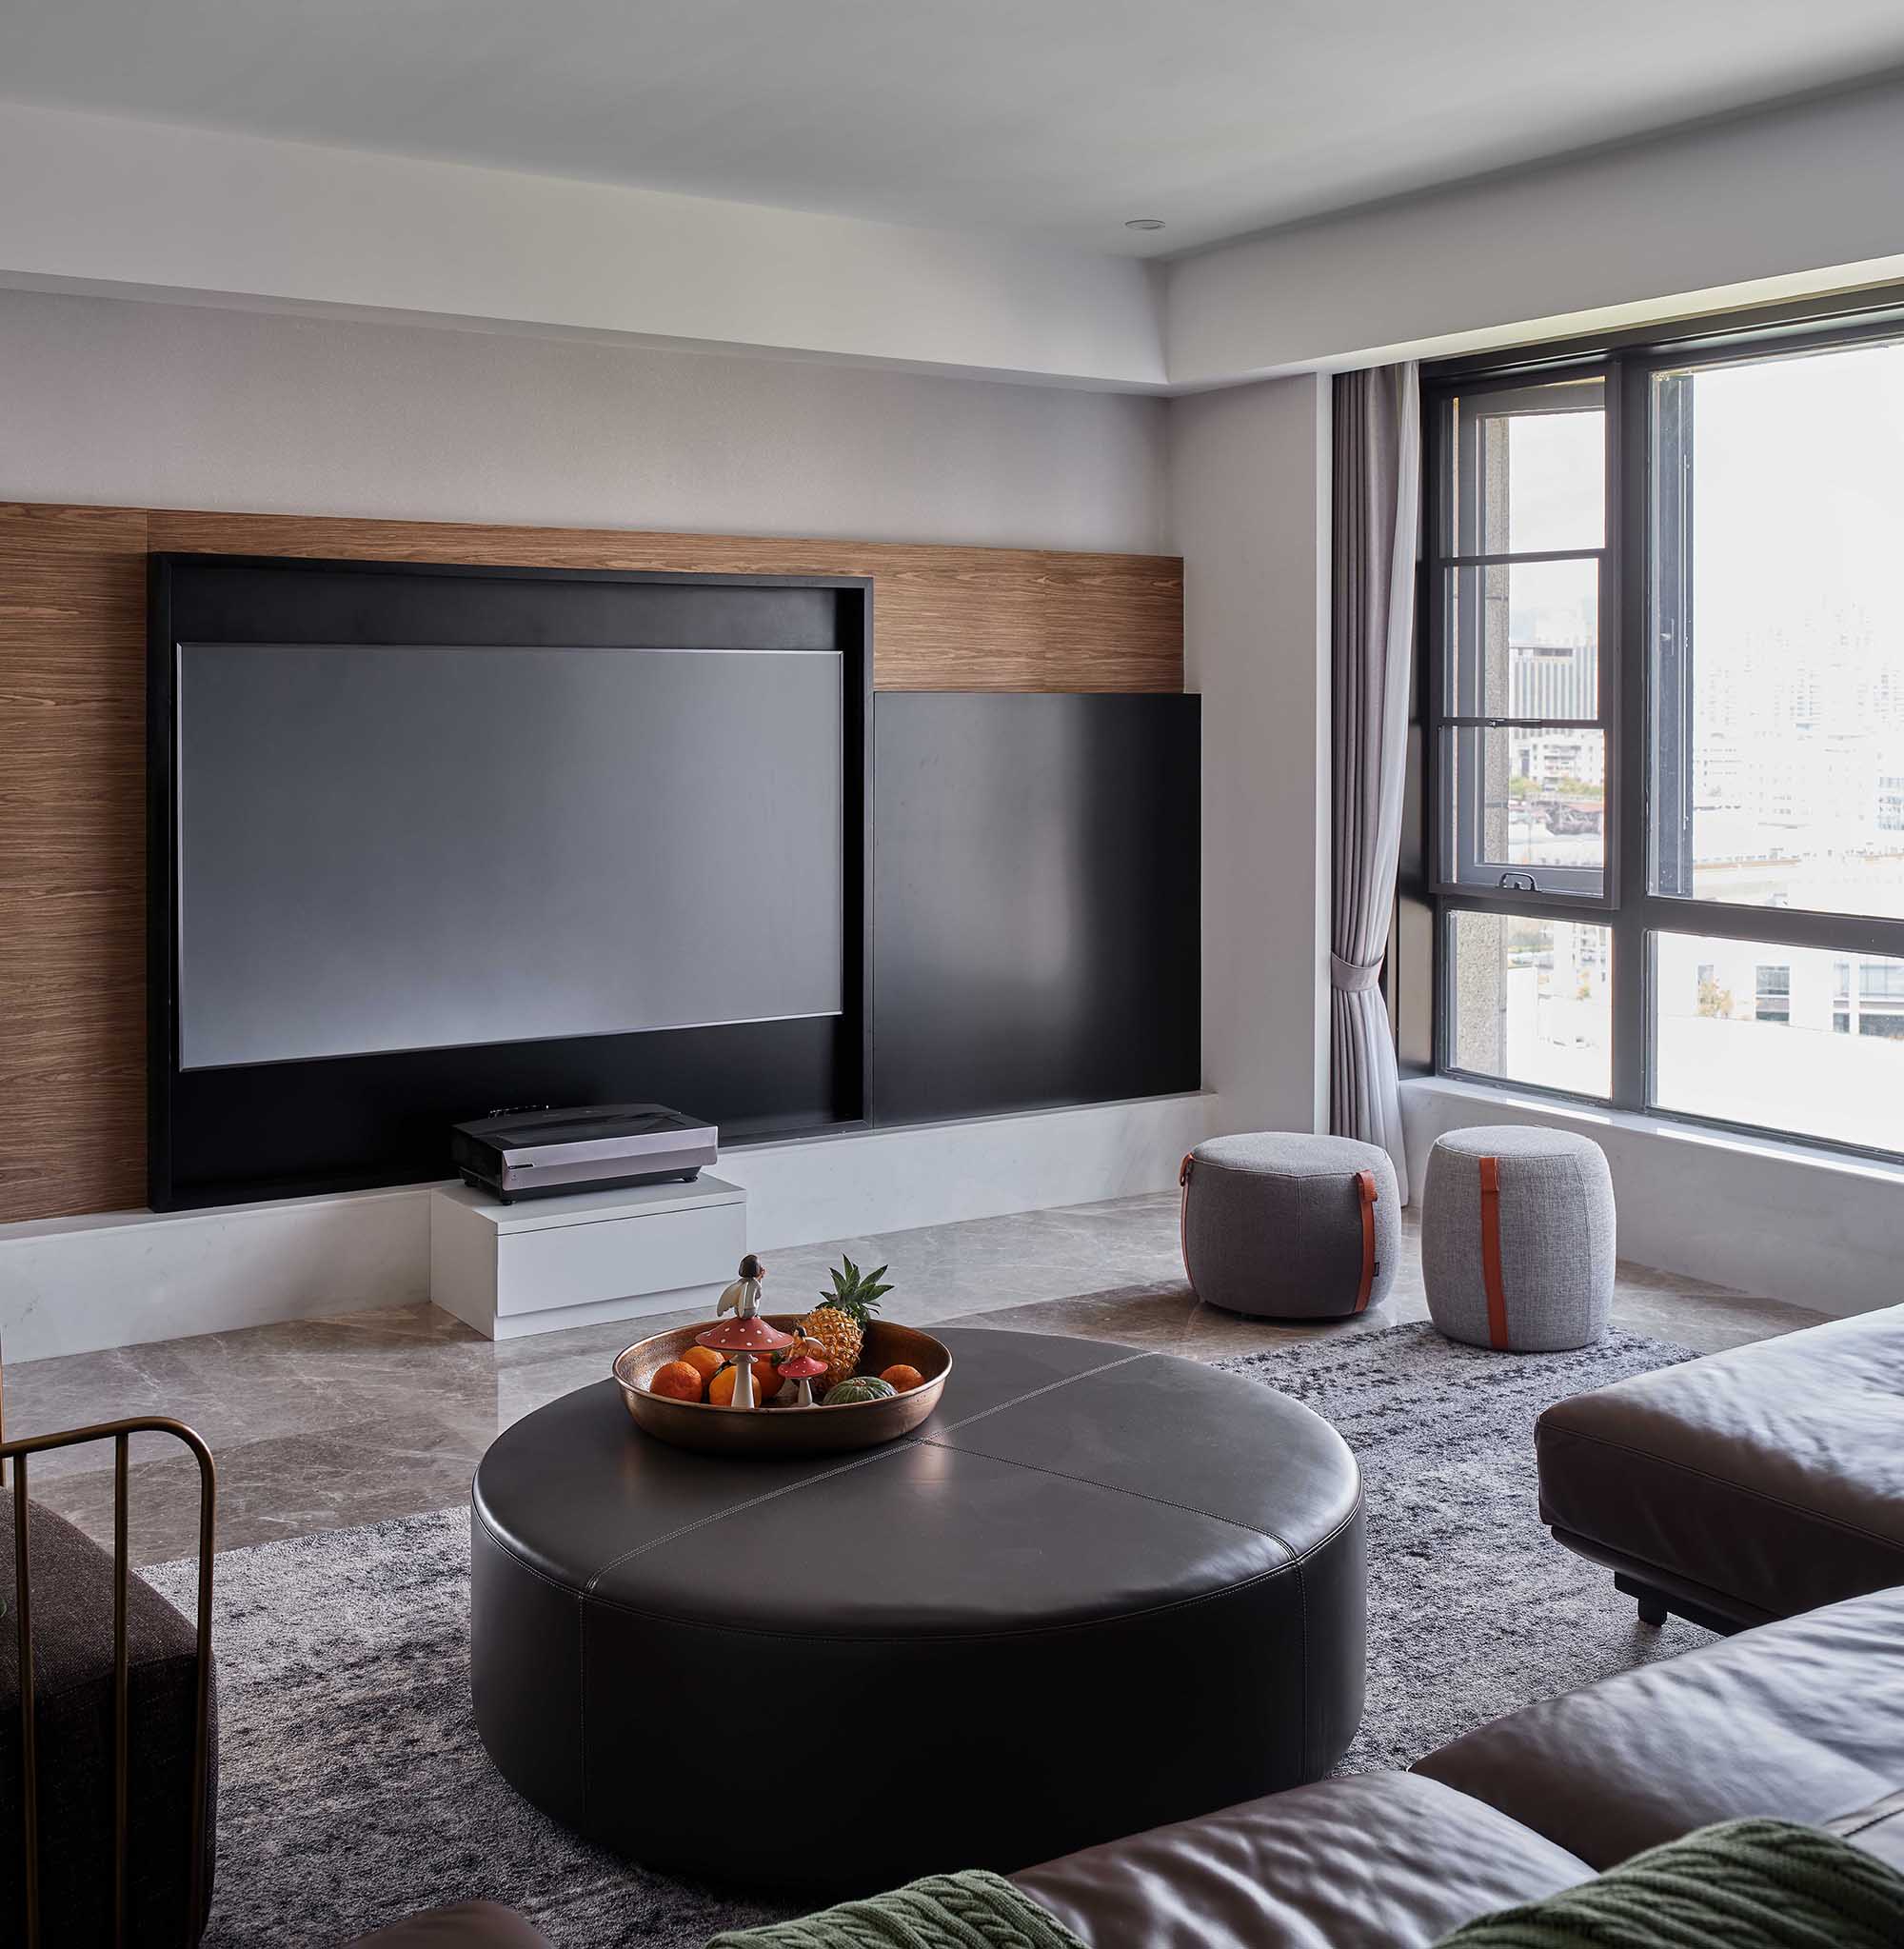 现代简约风格室内家装案例效果图-客厅电视背景墙